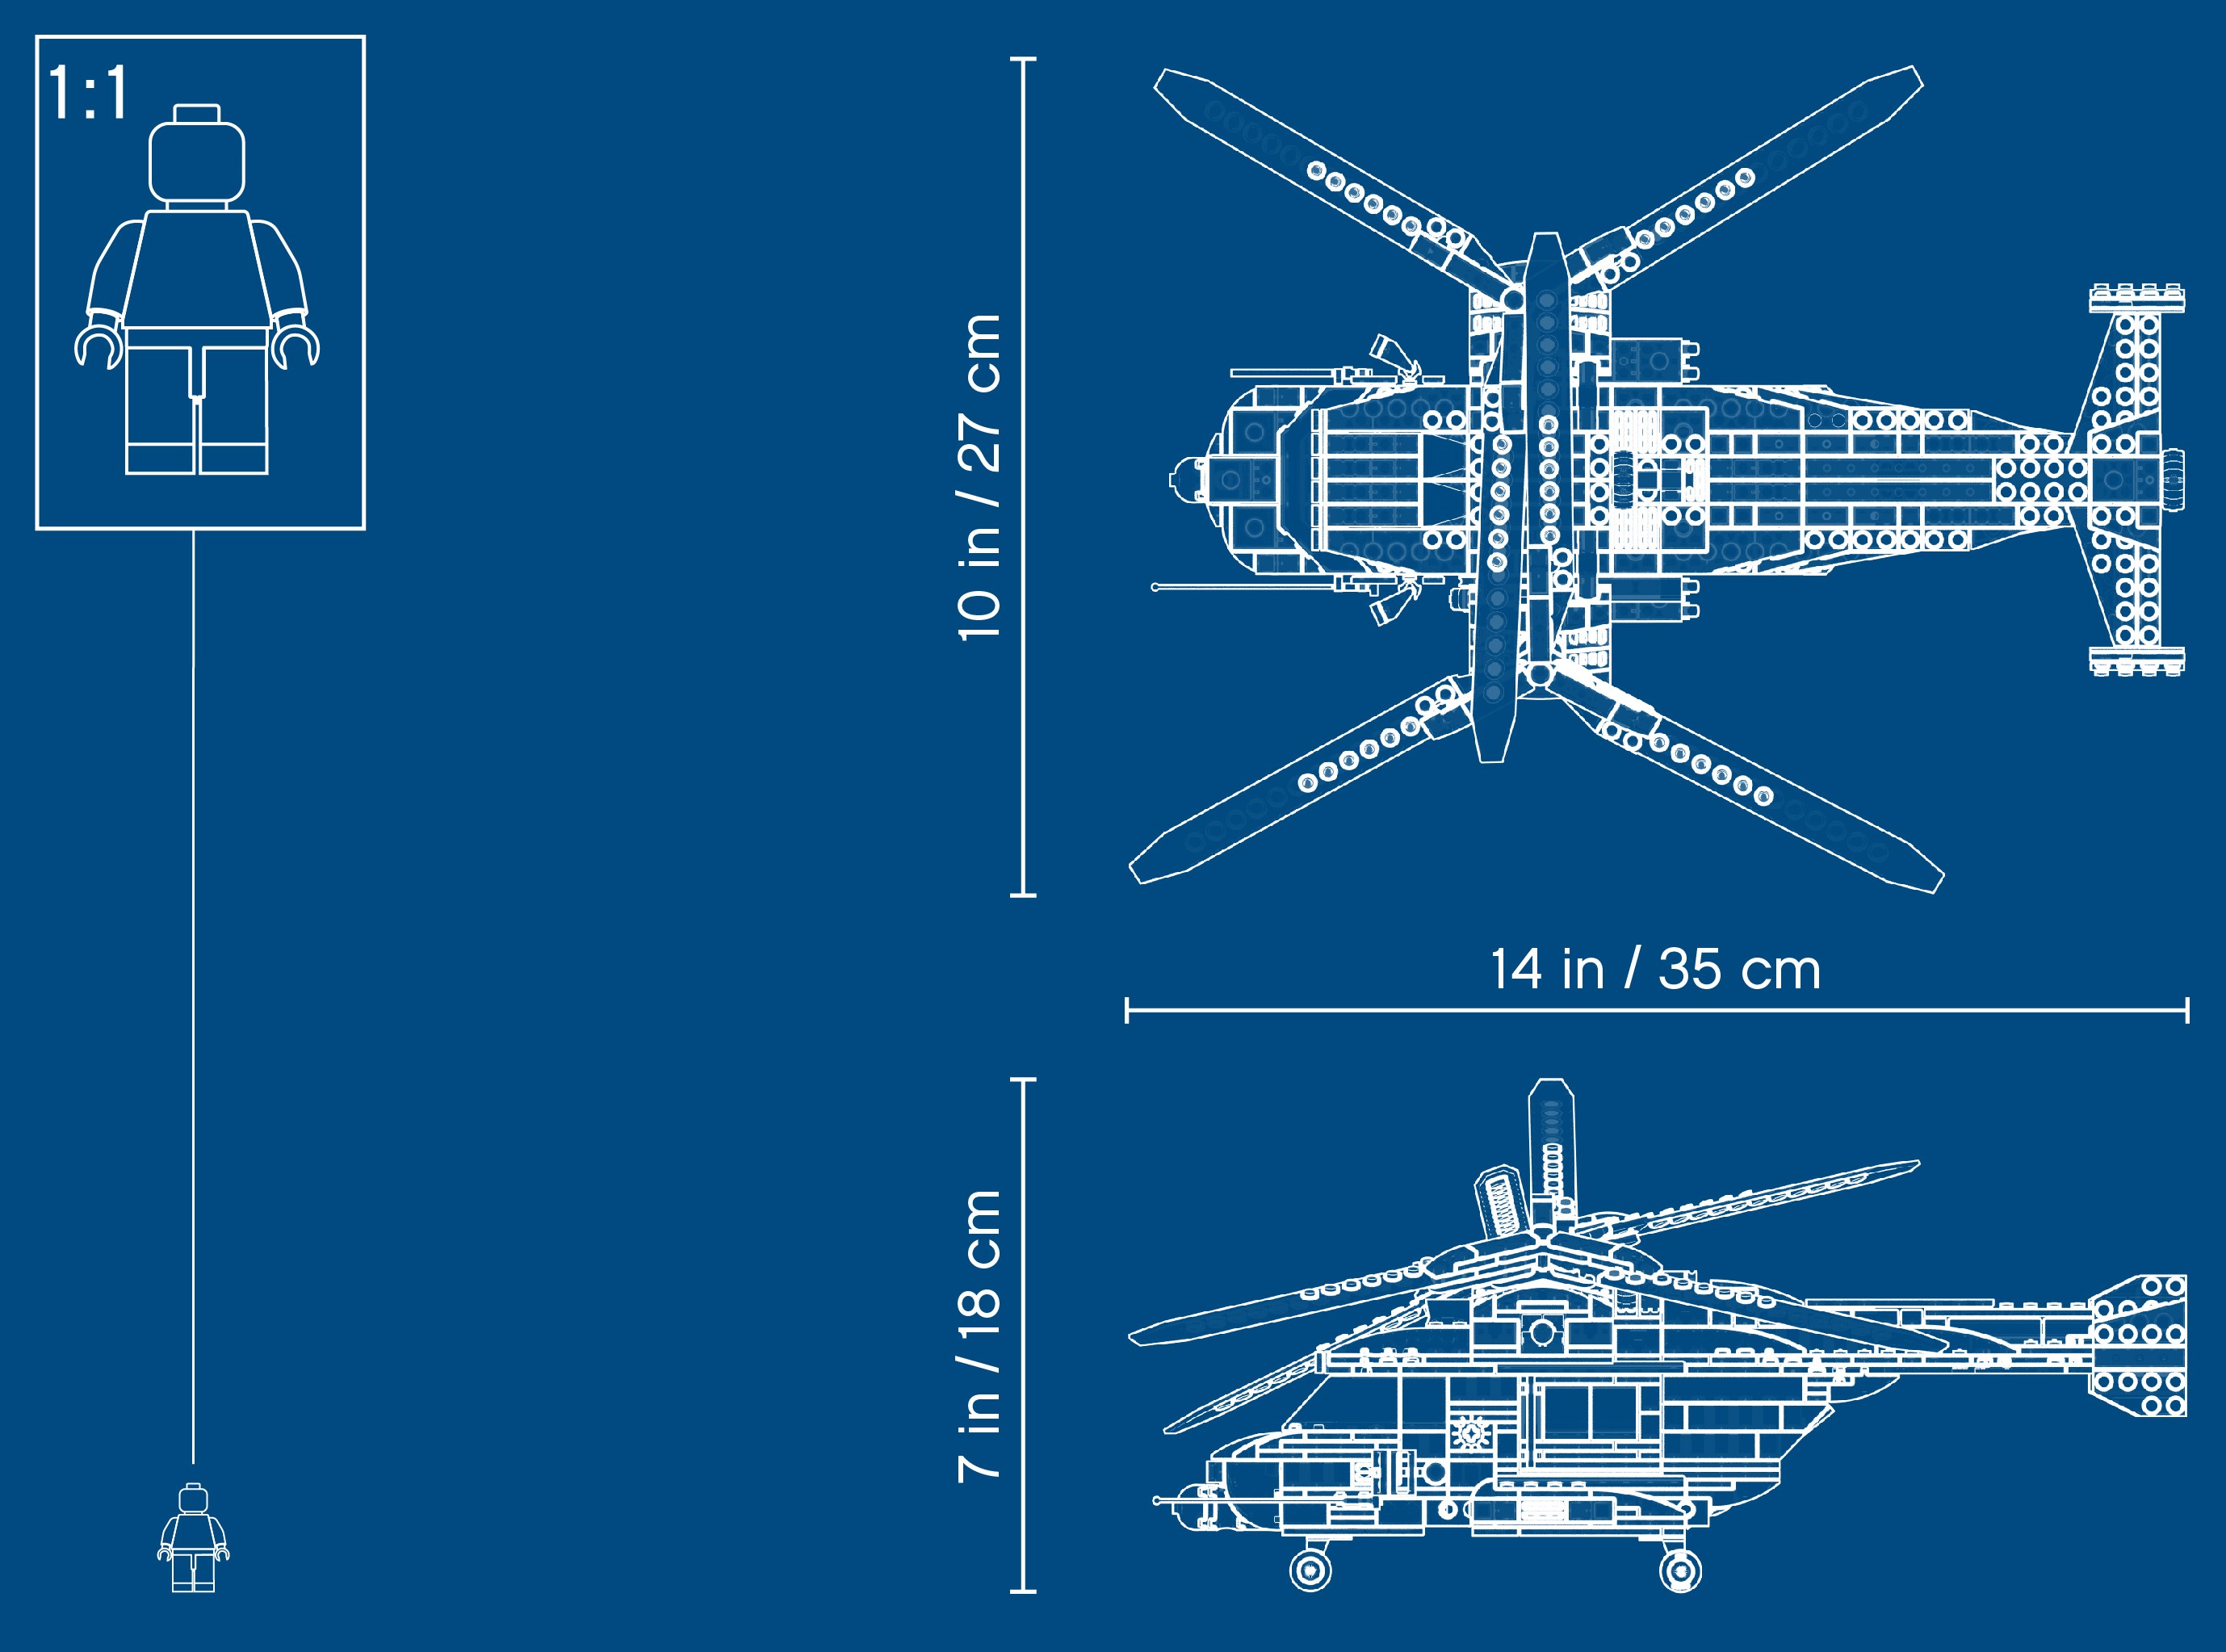 Lego ® Creator 31096-doble rotor de helicóptero-nuevo